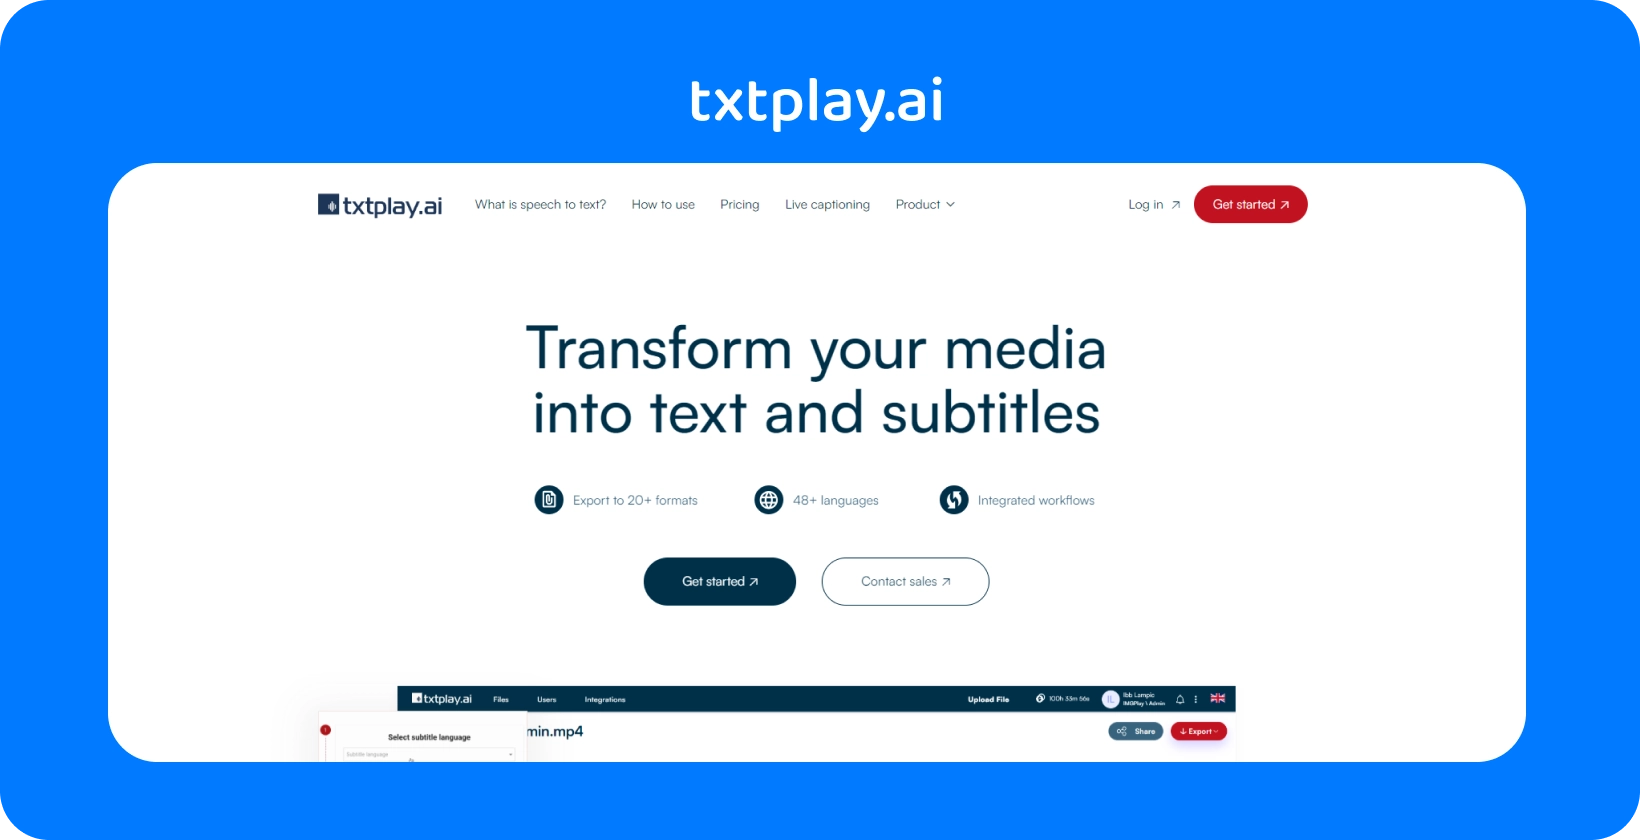 Omdan medierne til tekst og undertekster med txtplay.ai, der understøtter 48+ sprog og 20+ formater.